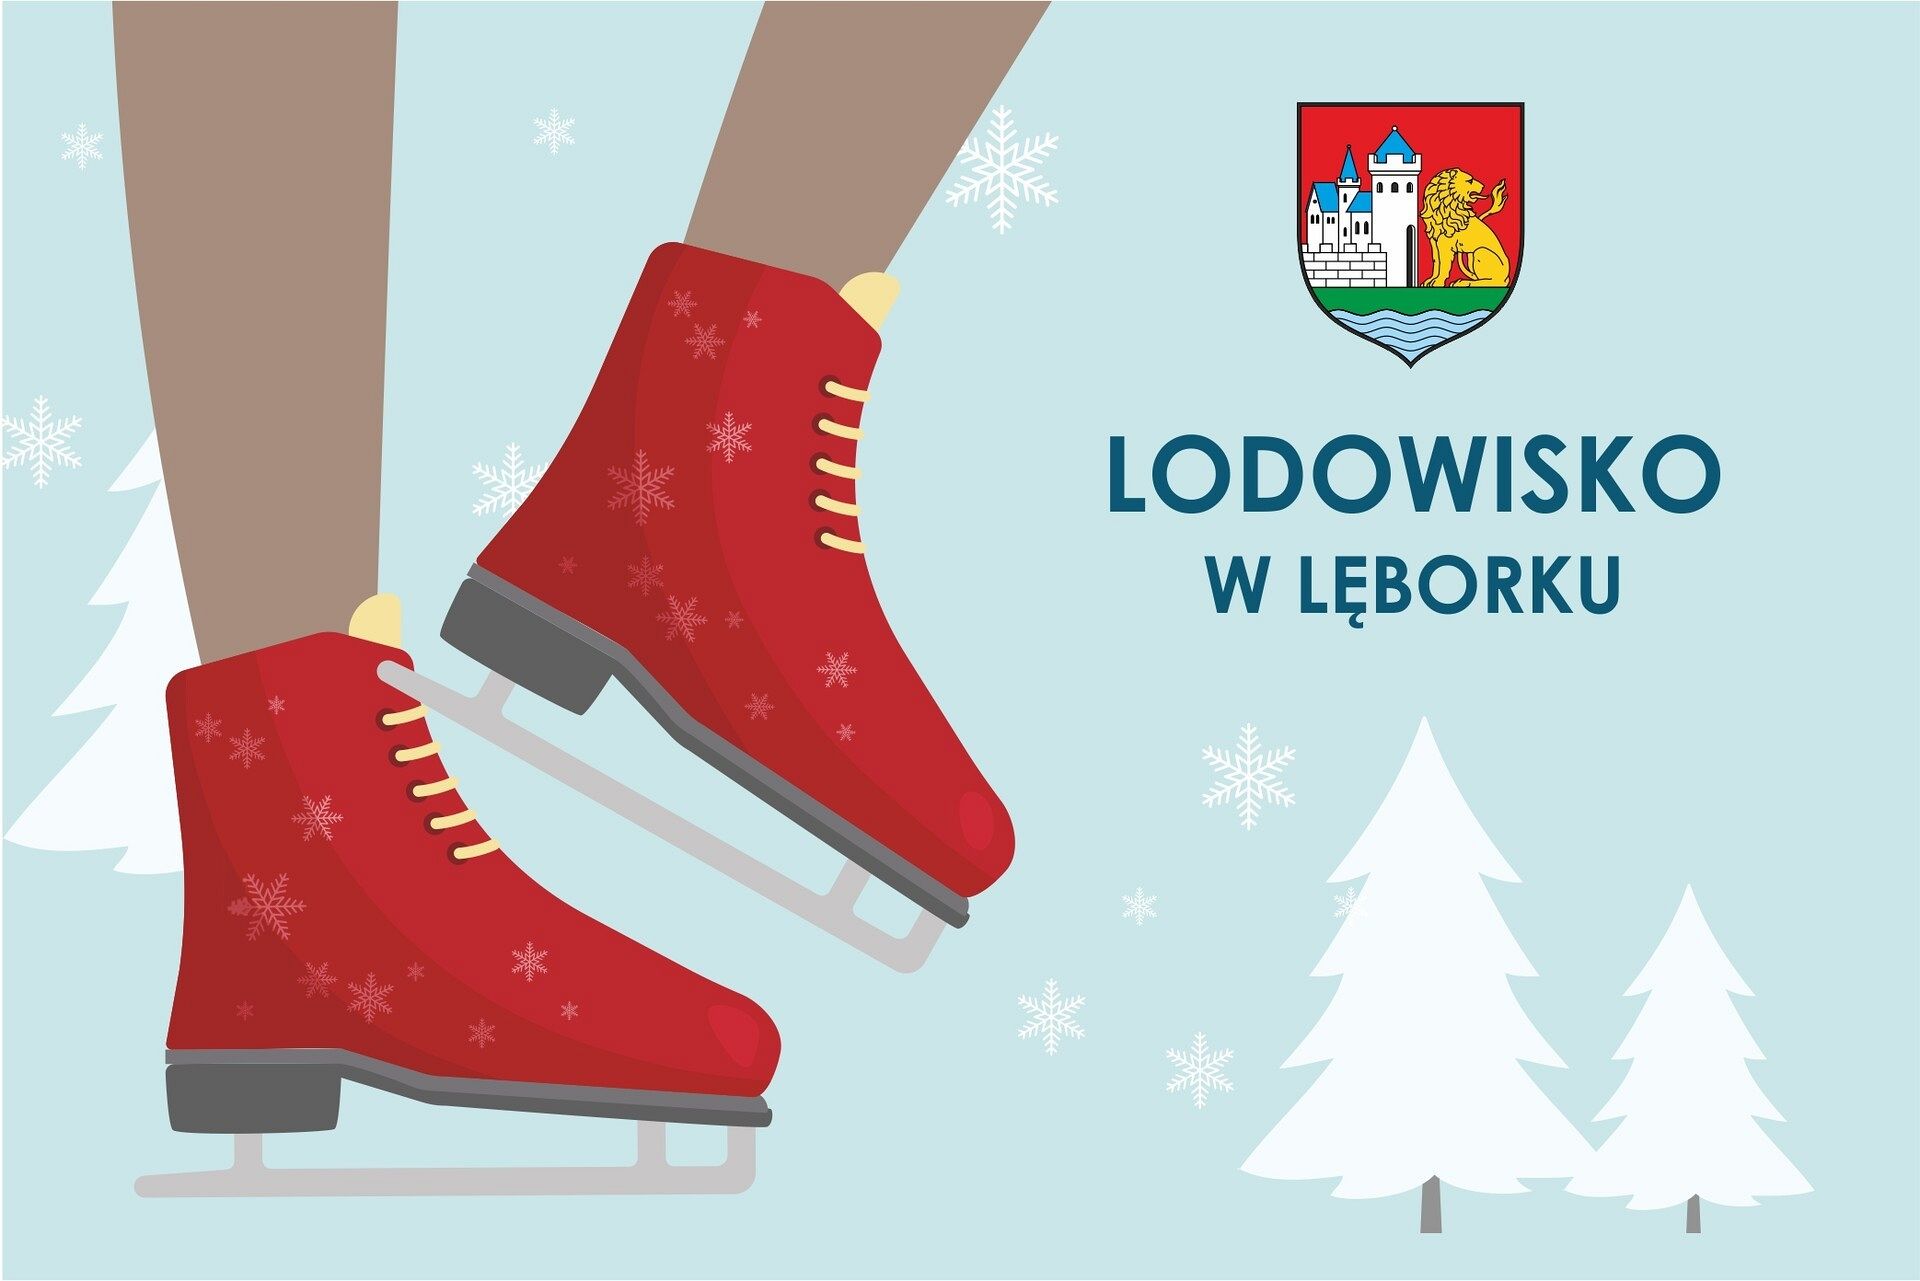 Otwarcie lodowiska w Lęborku 26 grudnia!